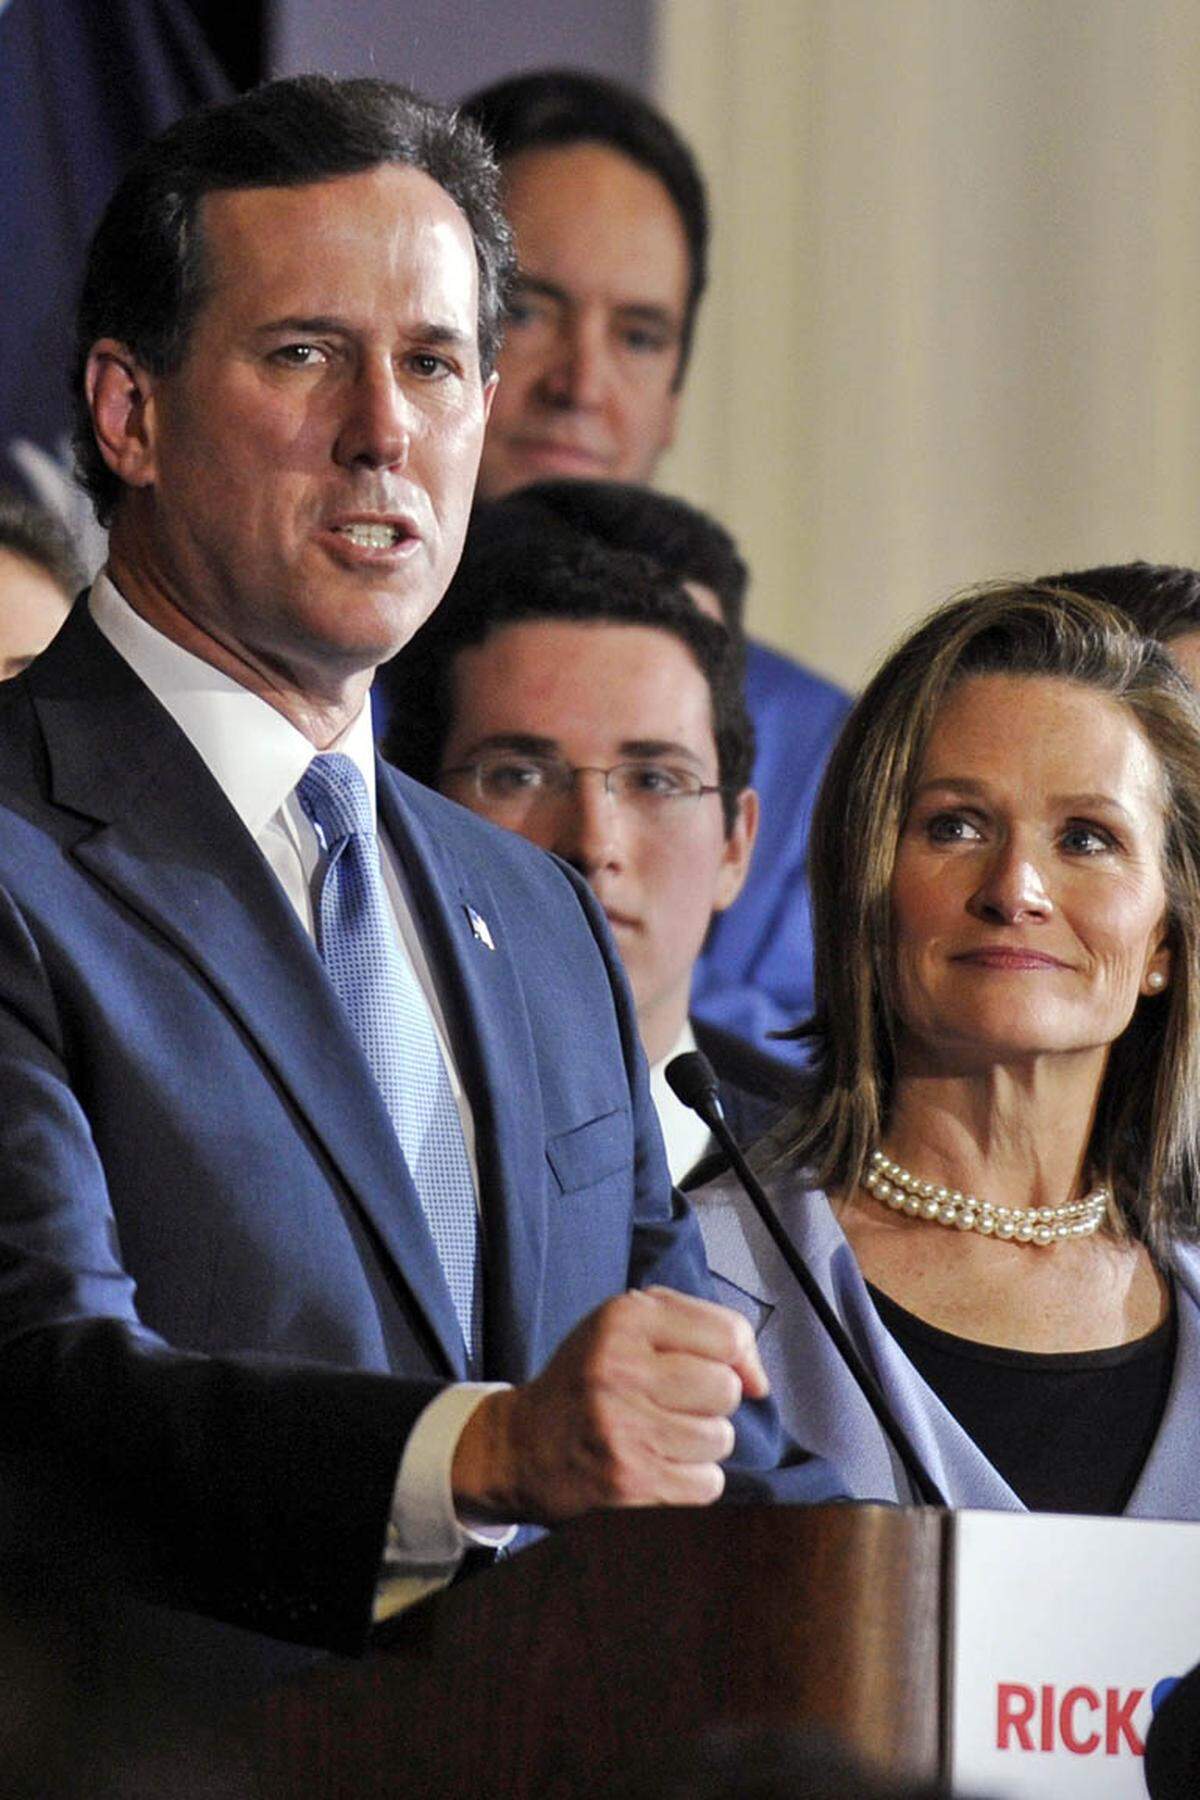 Rick Santorum hat im Vorwahlkampf der Republikaner auf eine Dreierstrategie gesetzt: Familie, Glaube und Freiheit waren die Schlagworte, unter die er seine Bewerbung gestellt hat. Der tiefgläubige Katholik bediente mit seiner strikten Absage an Abtreibung und Homo-Ehe vor allem die Anliegen der religiösen Rechten. Santorums Strategie ging aber nicht auf. Nach mehreren Niederlagen gegen Mitt Romney zog er seine Bewerbung Mitte April zurück.